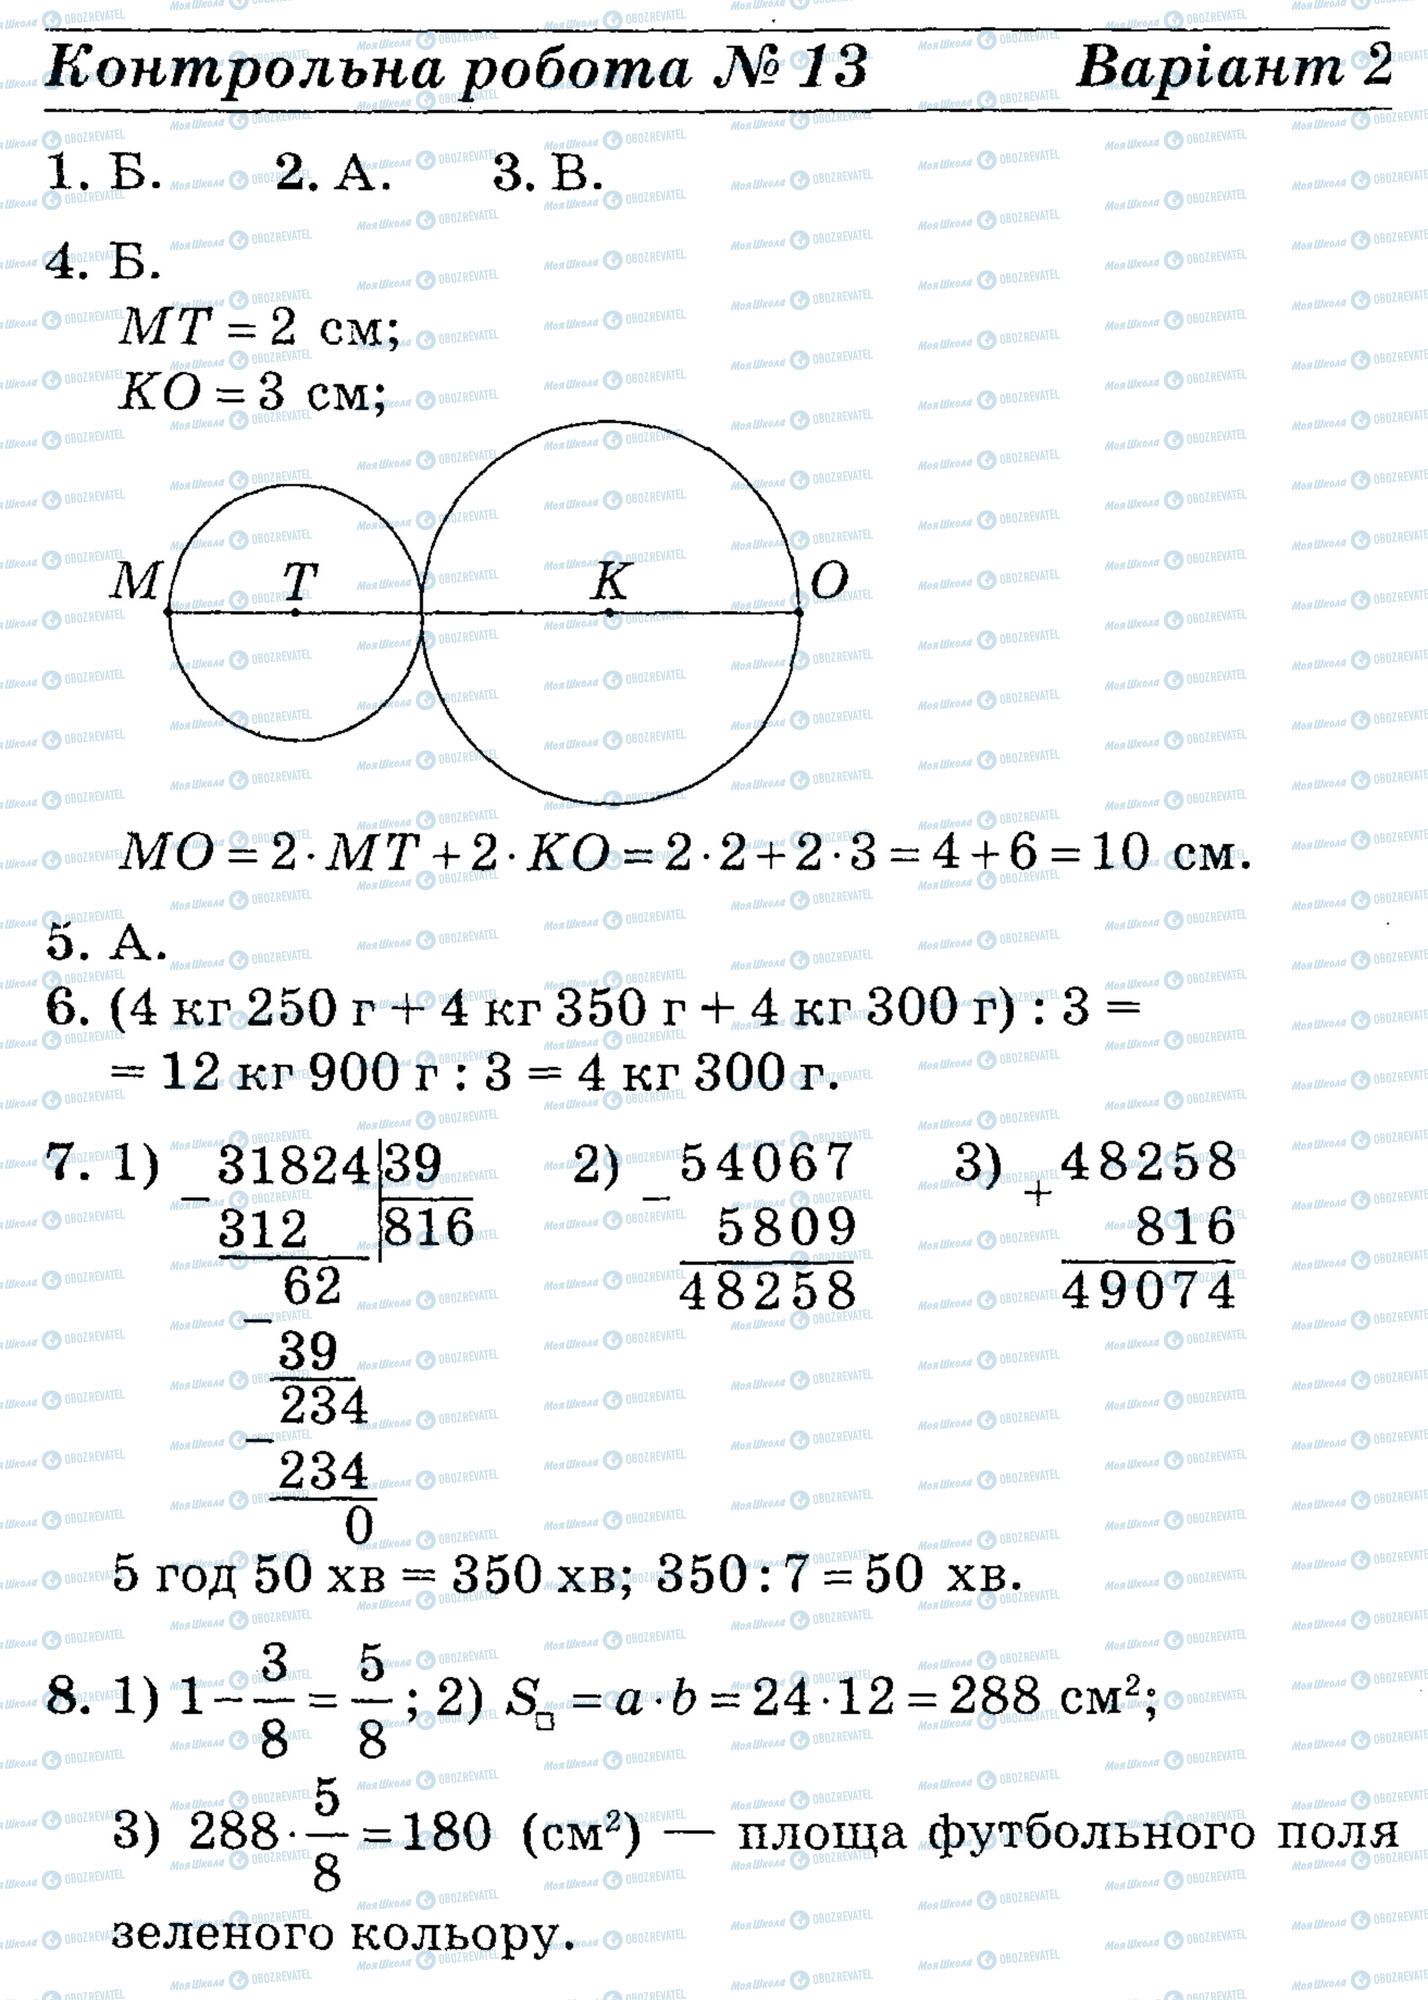 ДПА Математика 4 класс страница math-DPA-2013-4kl-K13-8